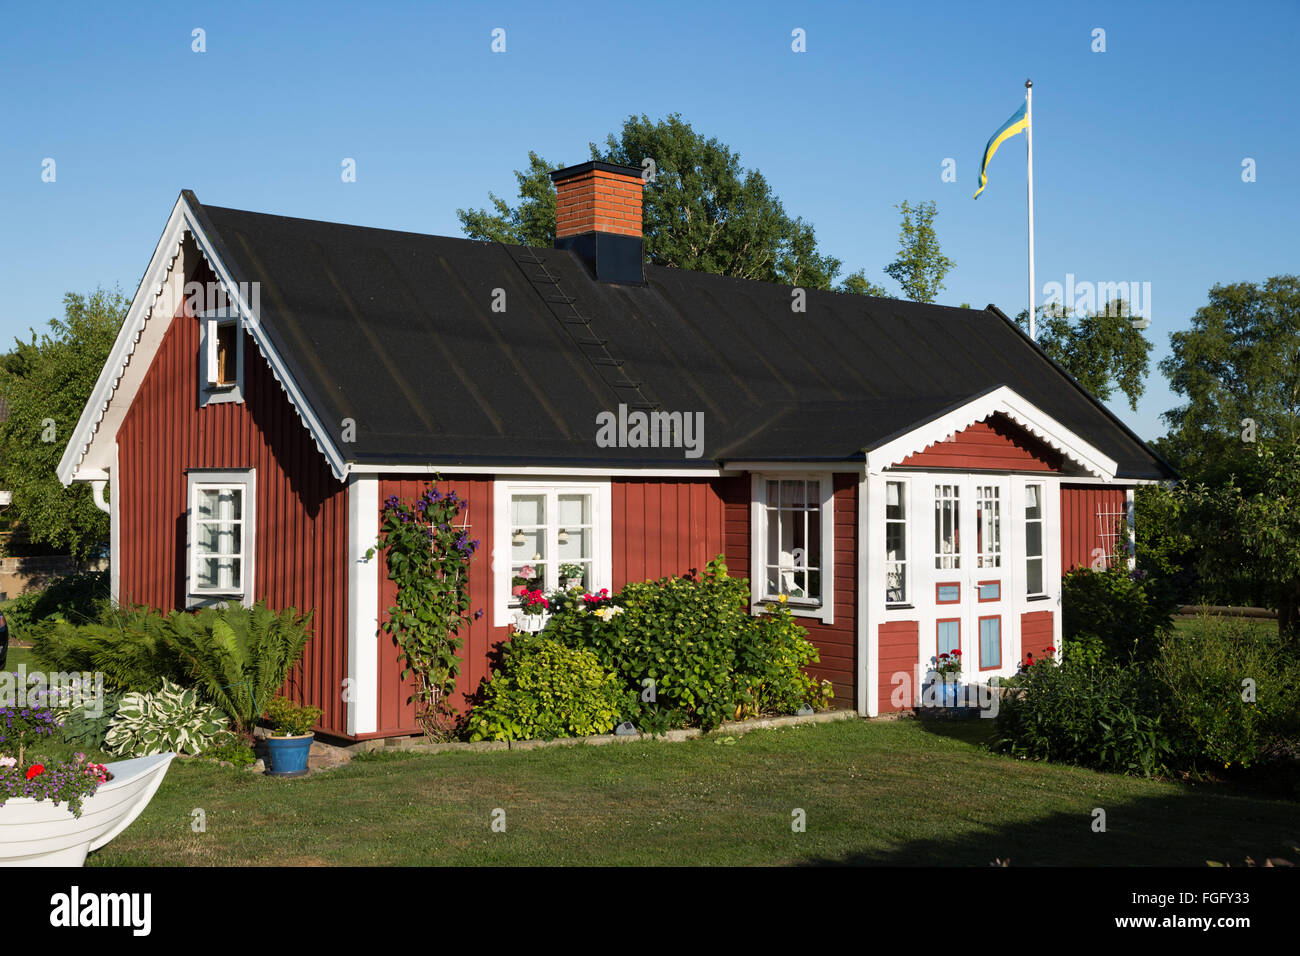 Rouge traditionnelle maison d'été suédois, Tjurko Island, près de Karlskrona, Blekinge, sud de la Suède, Suède, Scandinavie, Europe Banque D'Images